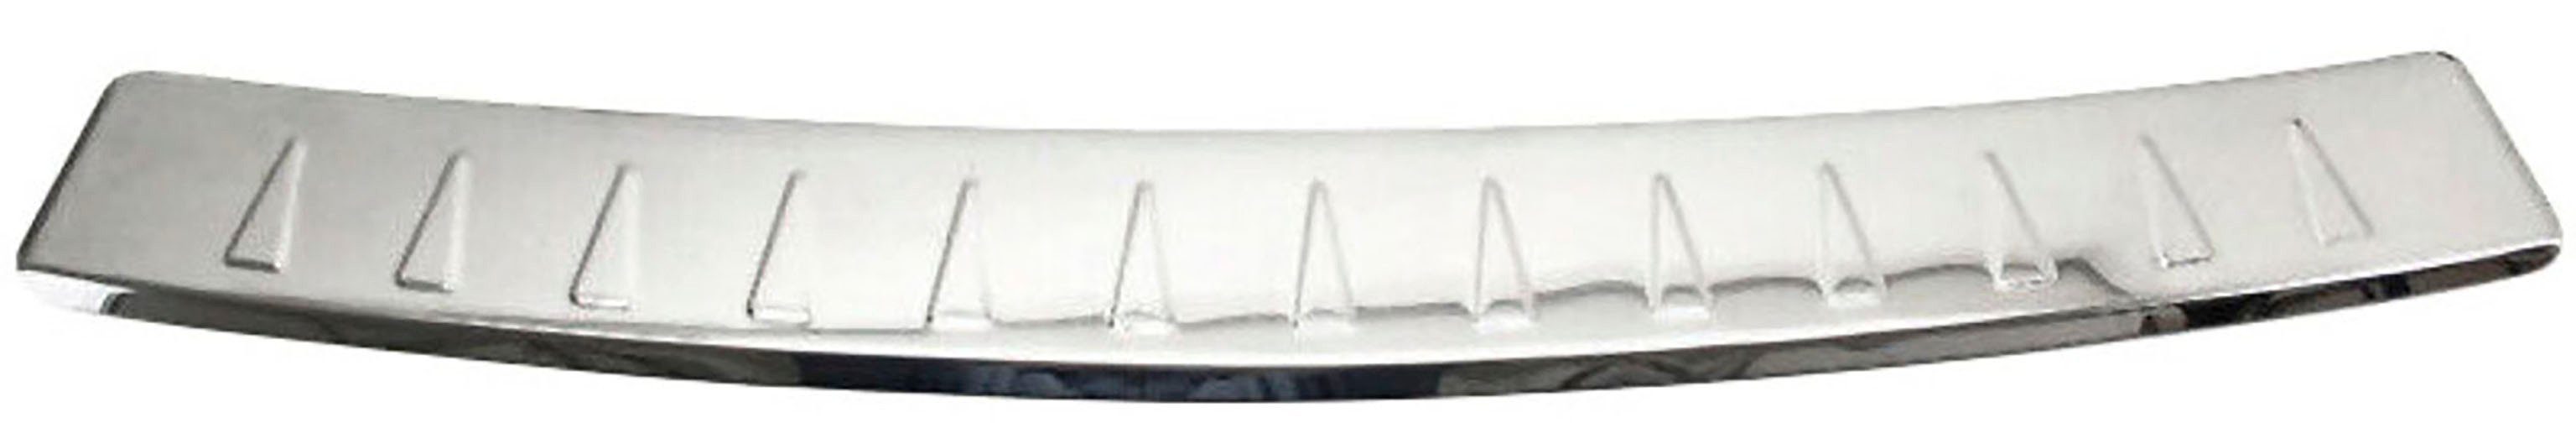 06/2008-2012, Edelstahl A-KLASSE, RECAMBO W169 MERCEDES chrom poliert MOPF, für Zubehör Ladekantenschutz,